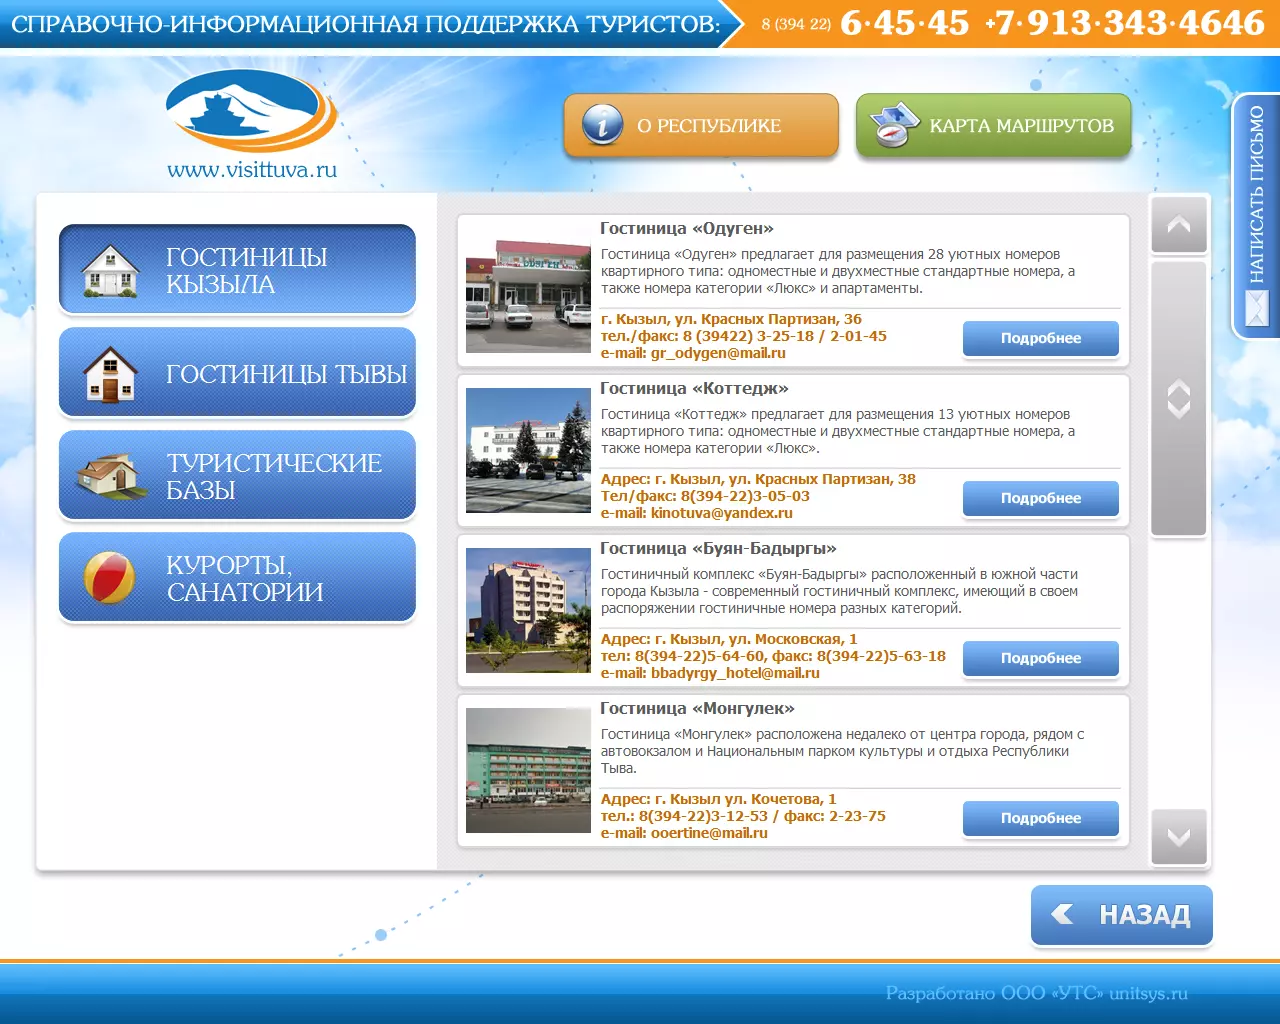 Аэропорт кызыл: онлайн табло, как добраться, такси, схема аэропорта и гостиницы рядом